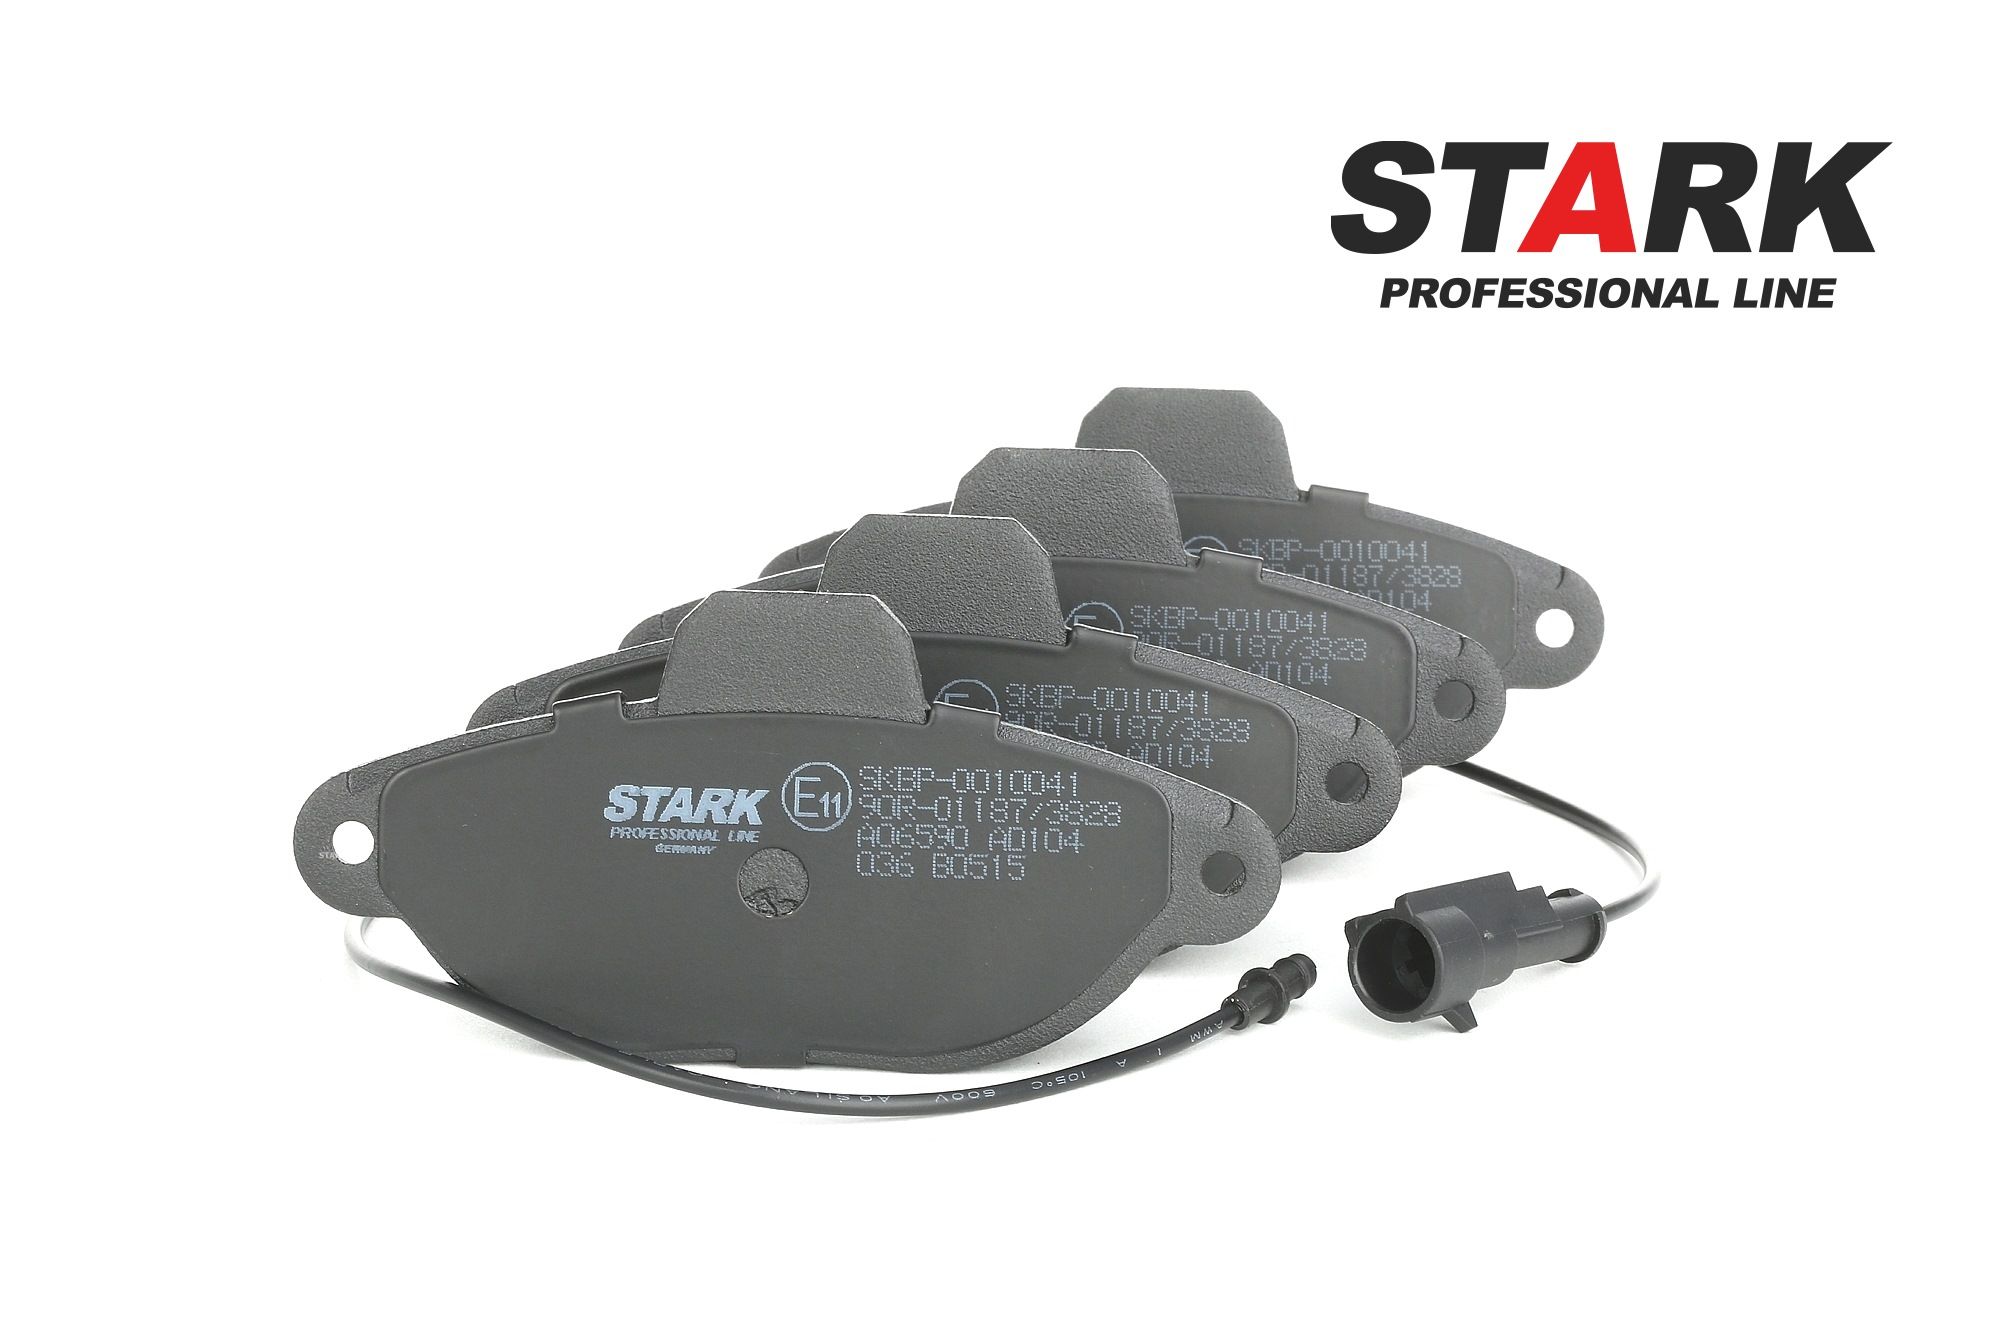 Originali STARK Pasticche dei freni SKBP-0010041 per FIAT CINQUECENTO